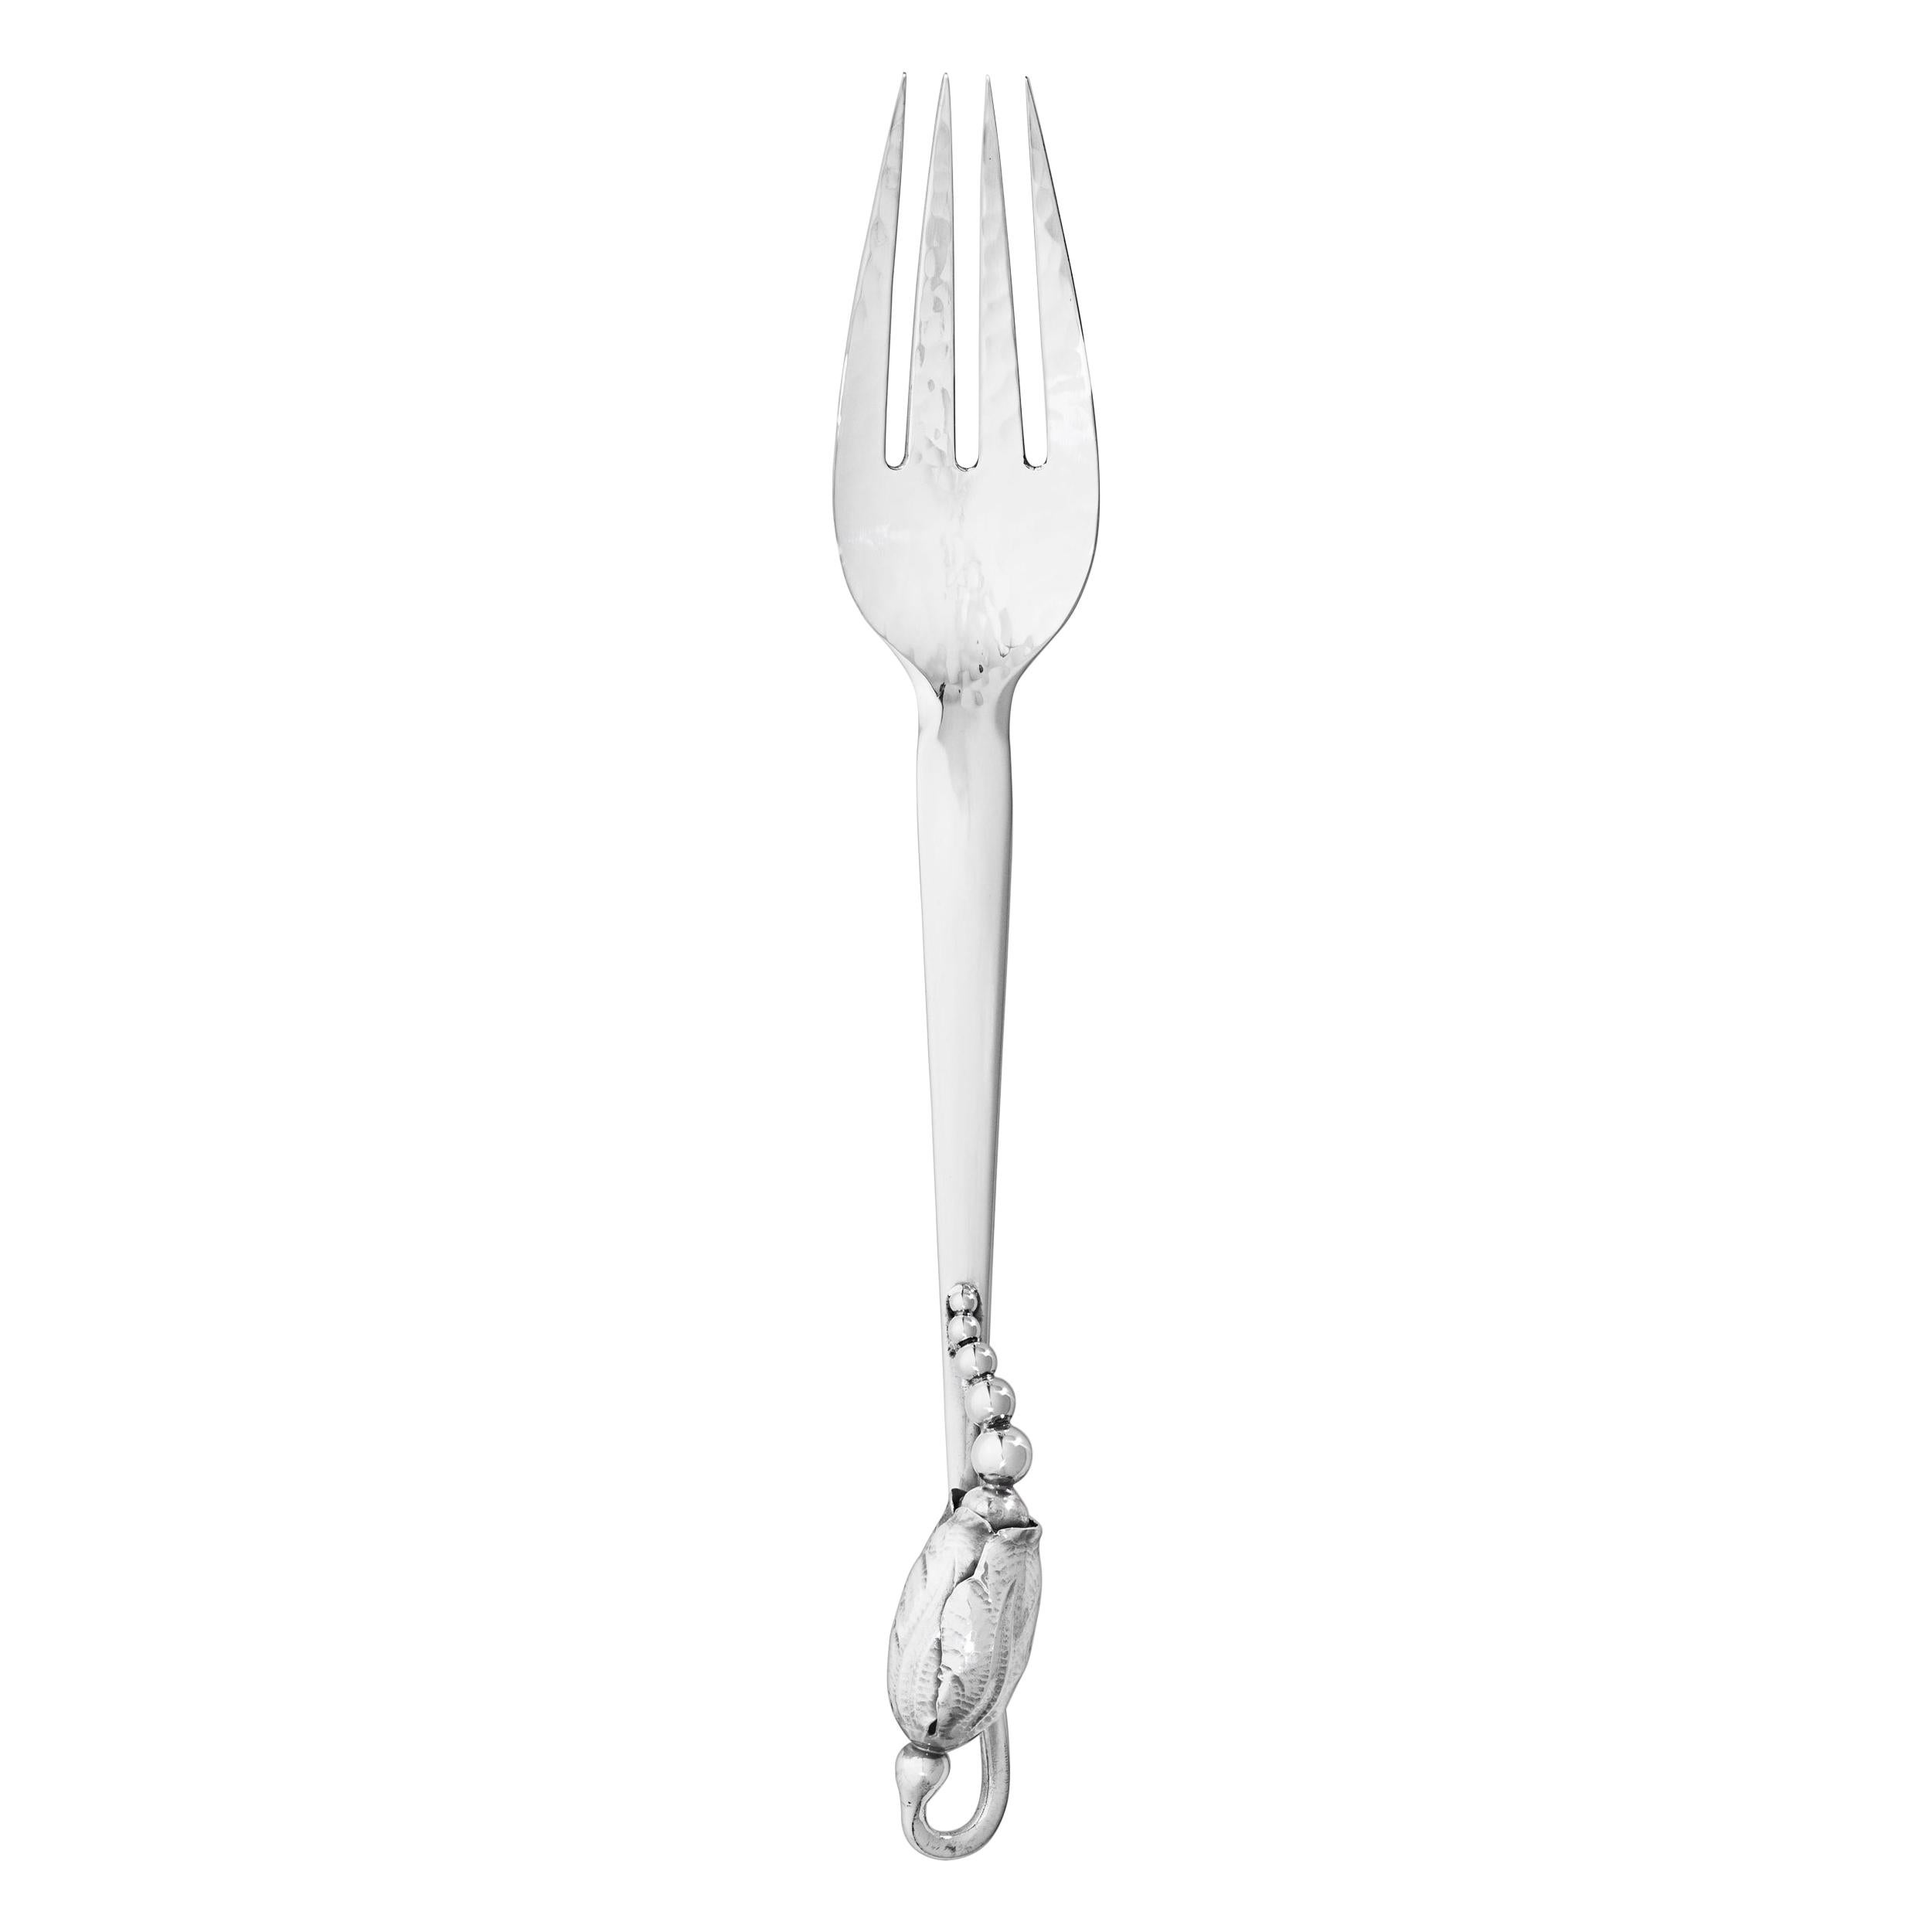 Georg Jensen Handcrafted Sterling Silver Blossom Large Dinner Fork